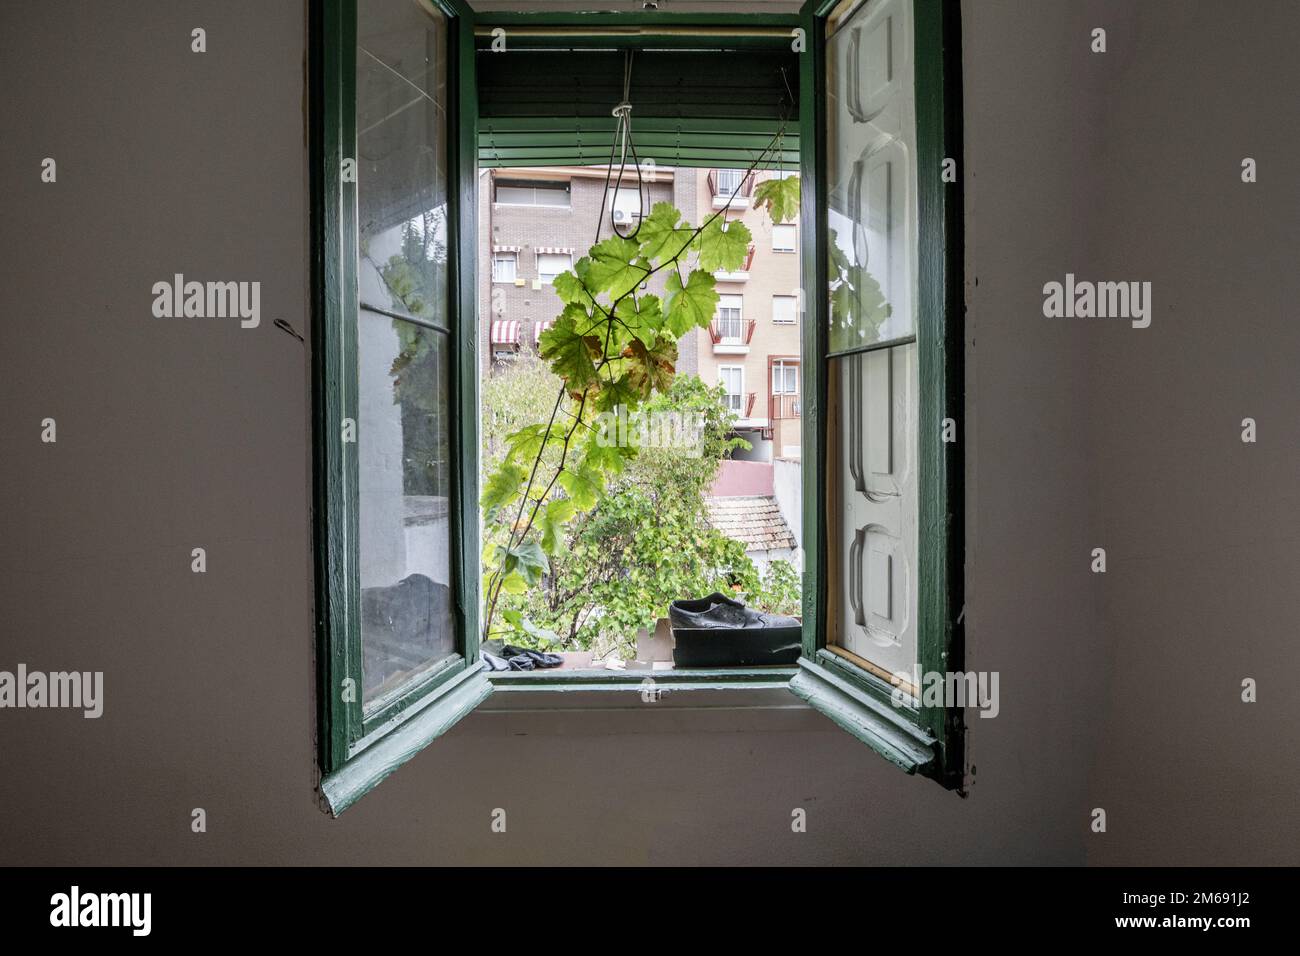 Chambre avec une fenêtre ouverte avec des feuilles de bois et de verre peint en vert et quelques branches à travers le cadre Banque D'Images